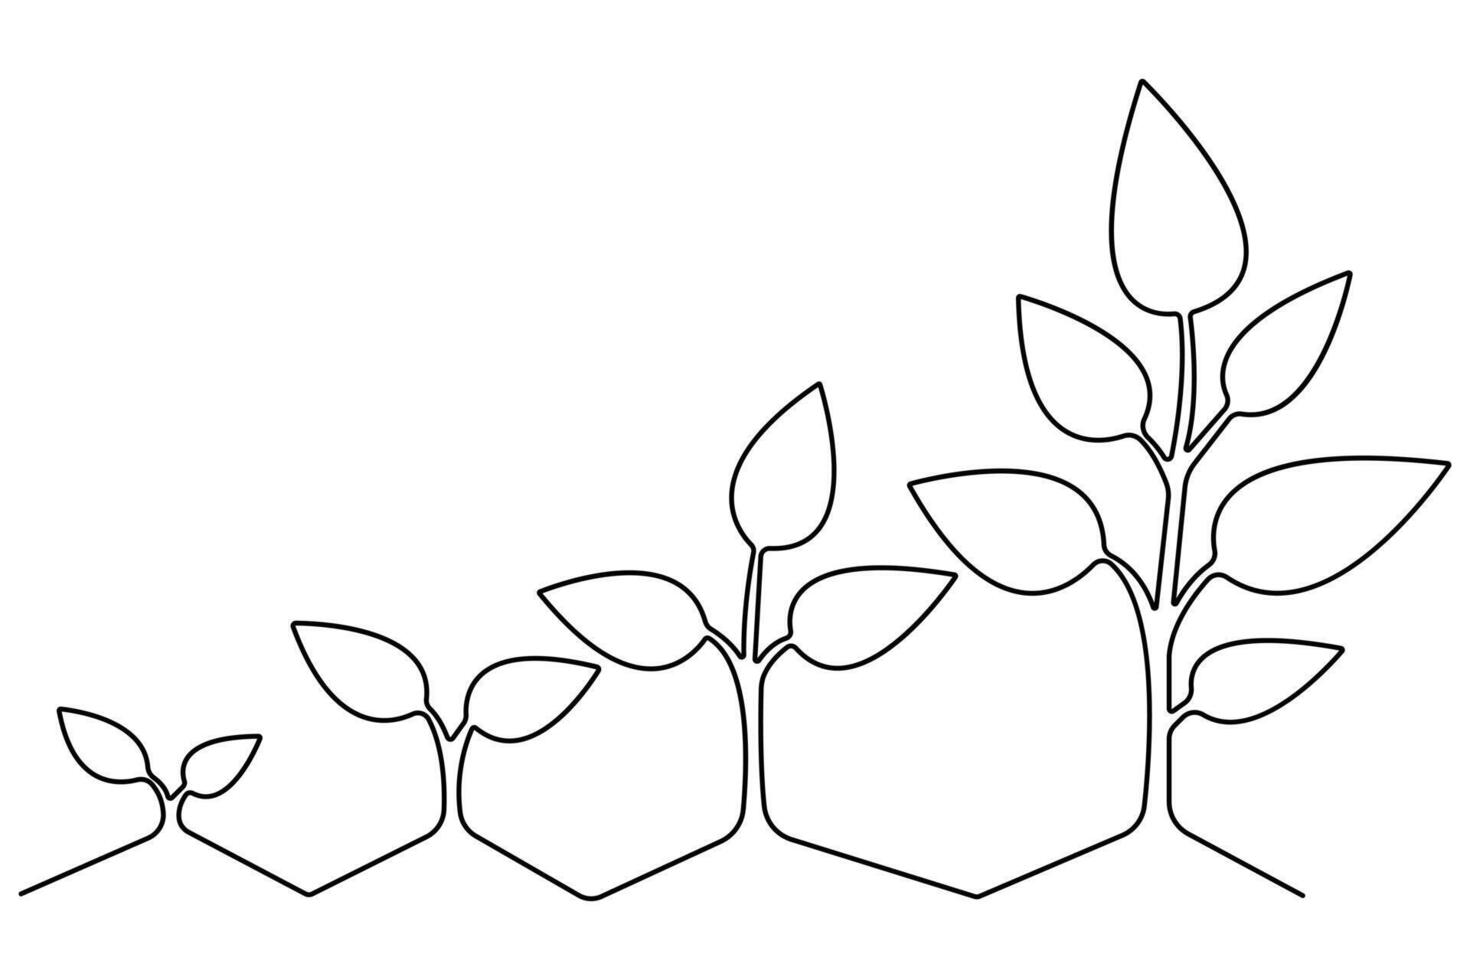 växt växande kontinuerlig ett linje konst teckning av träd växt översikt vektor illustration